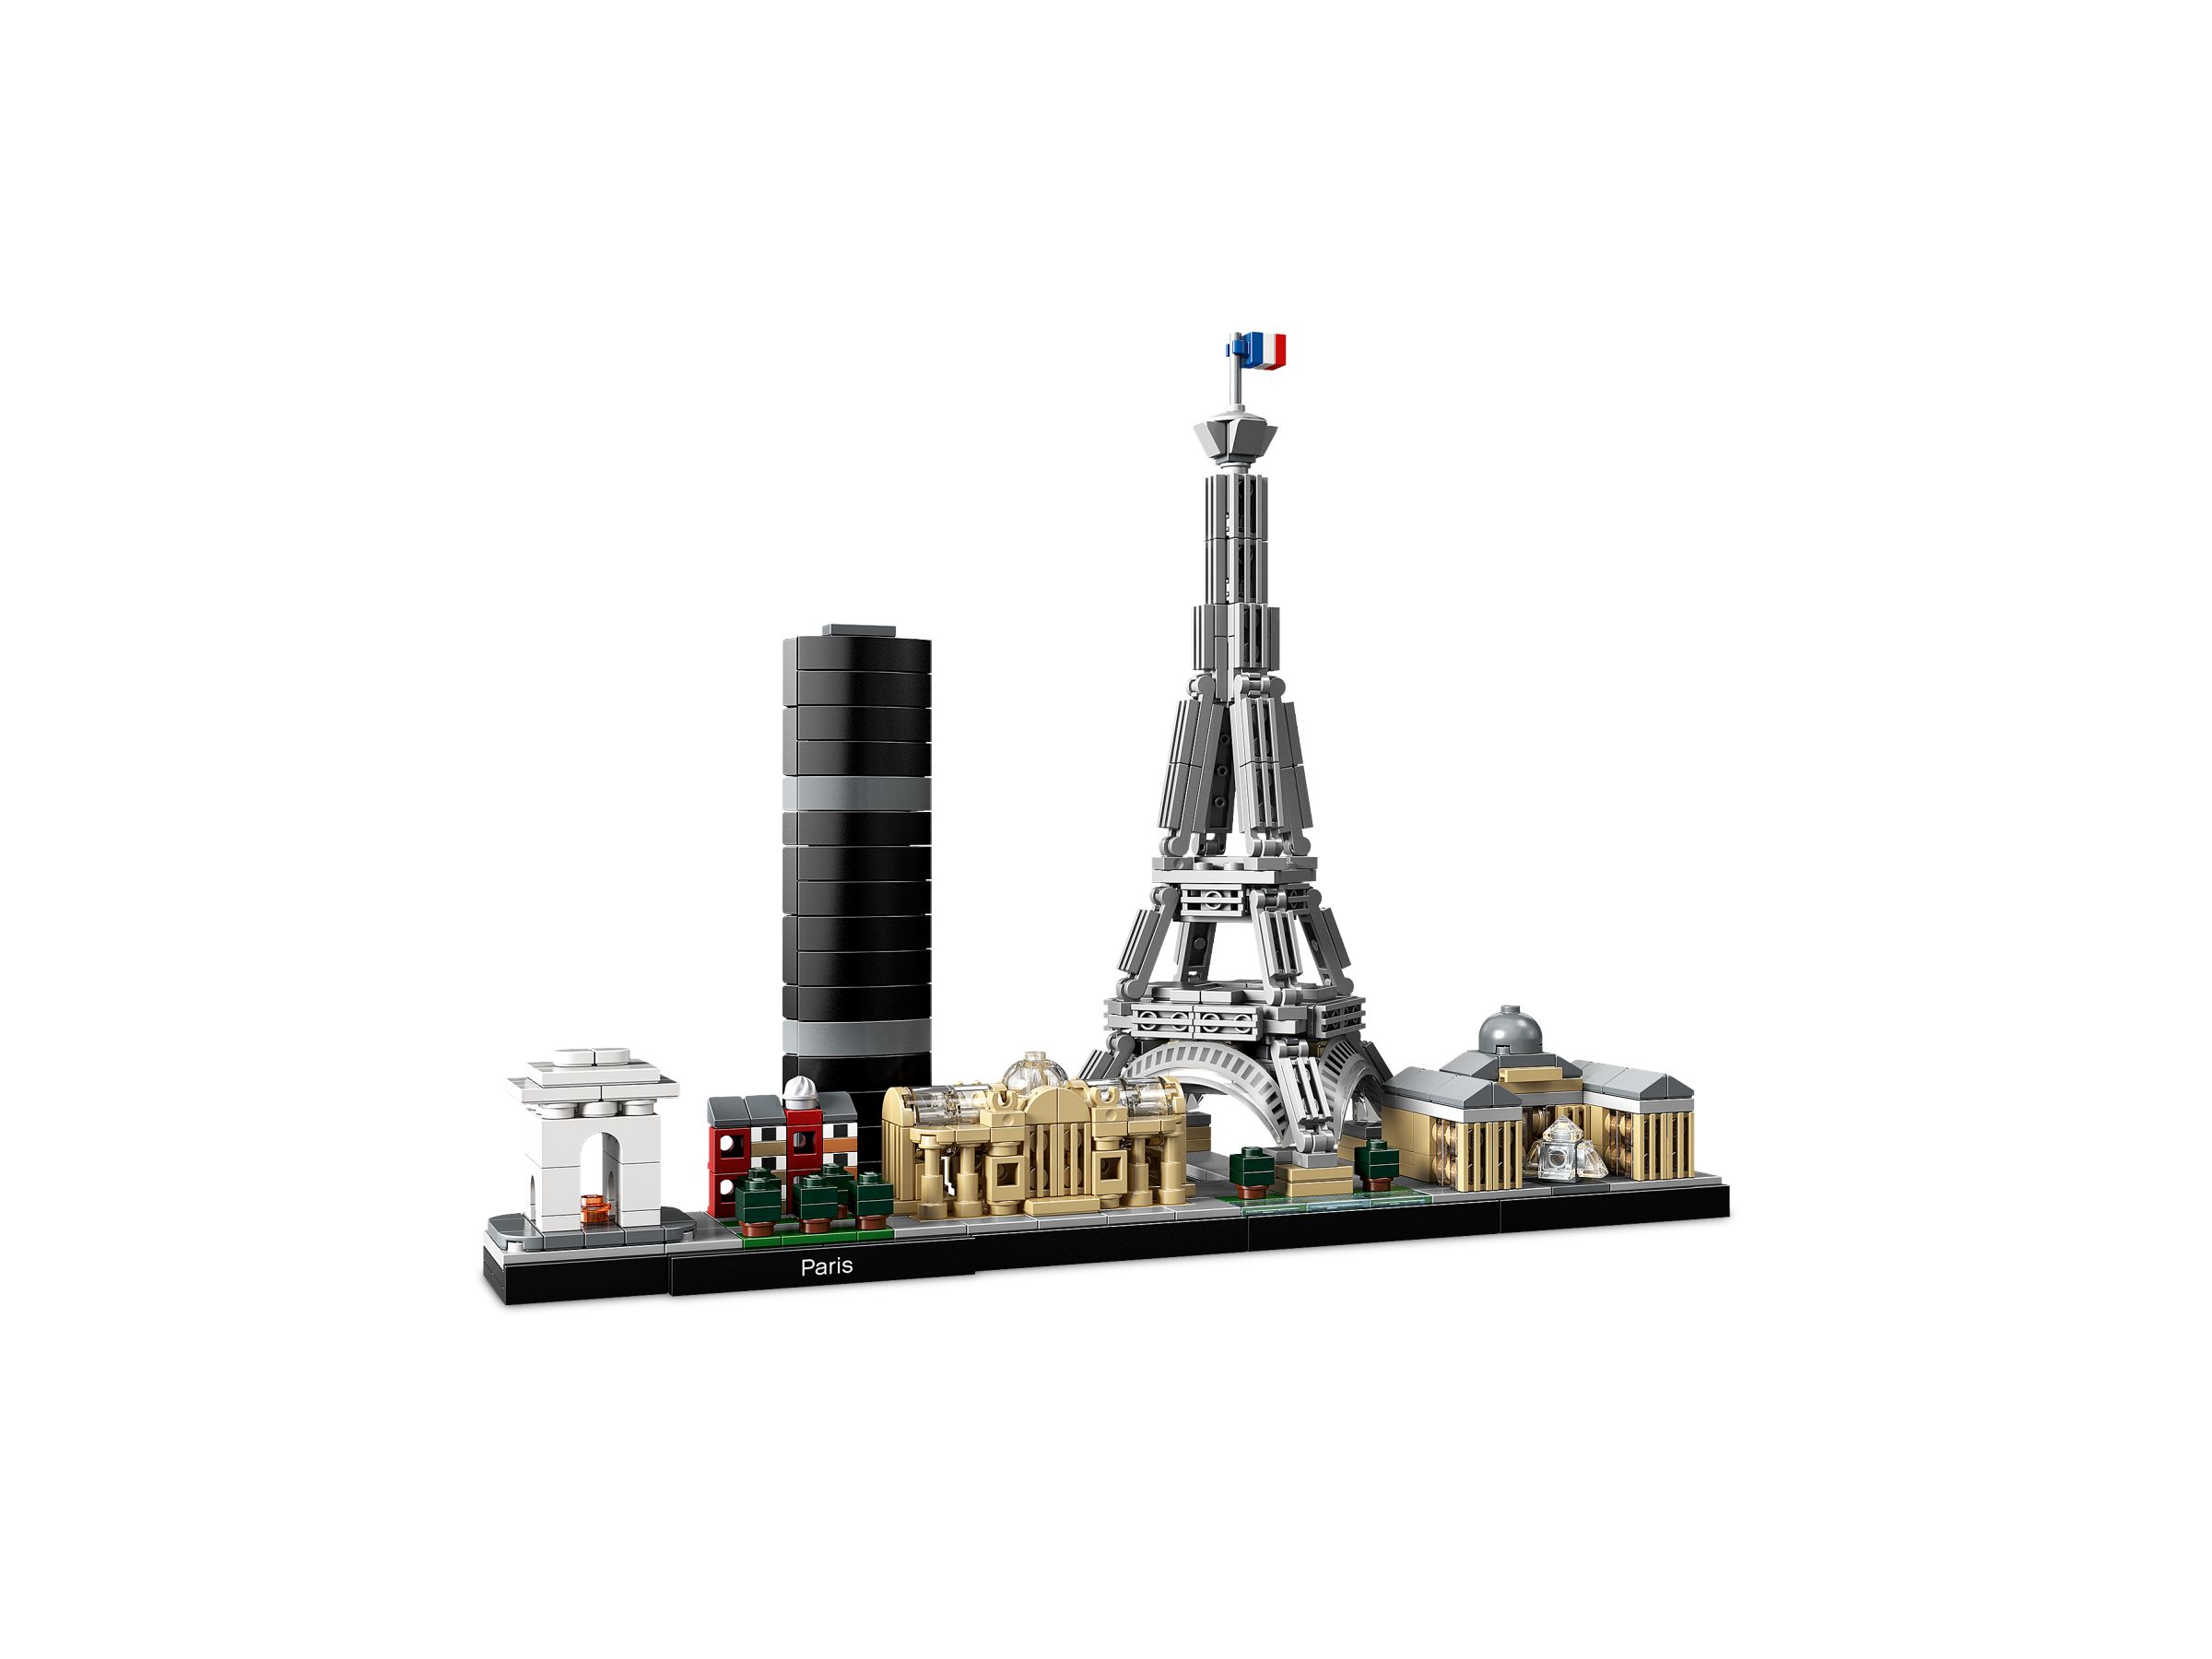 LEGO Architecture 21044 Paris LEGO_21044_alt2.jpg